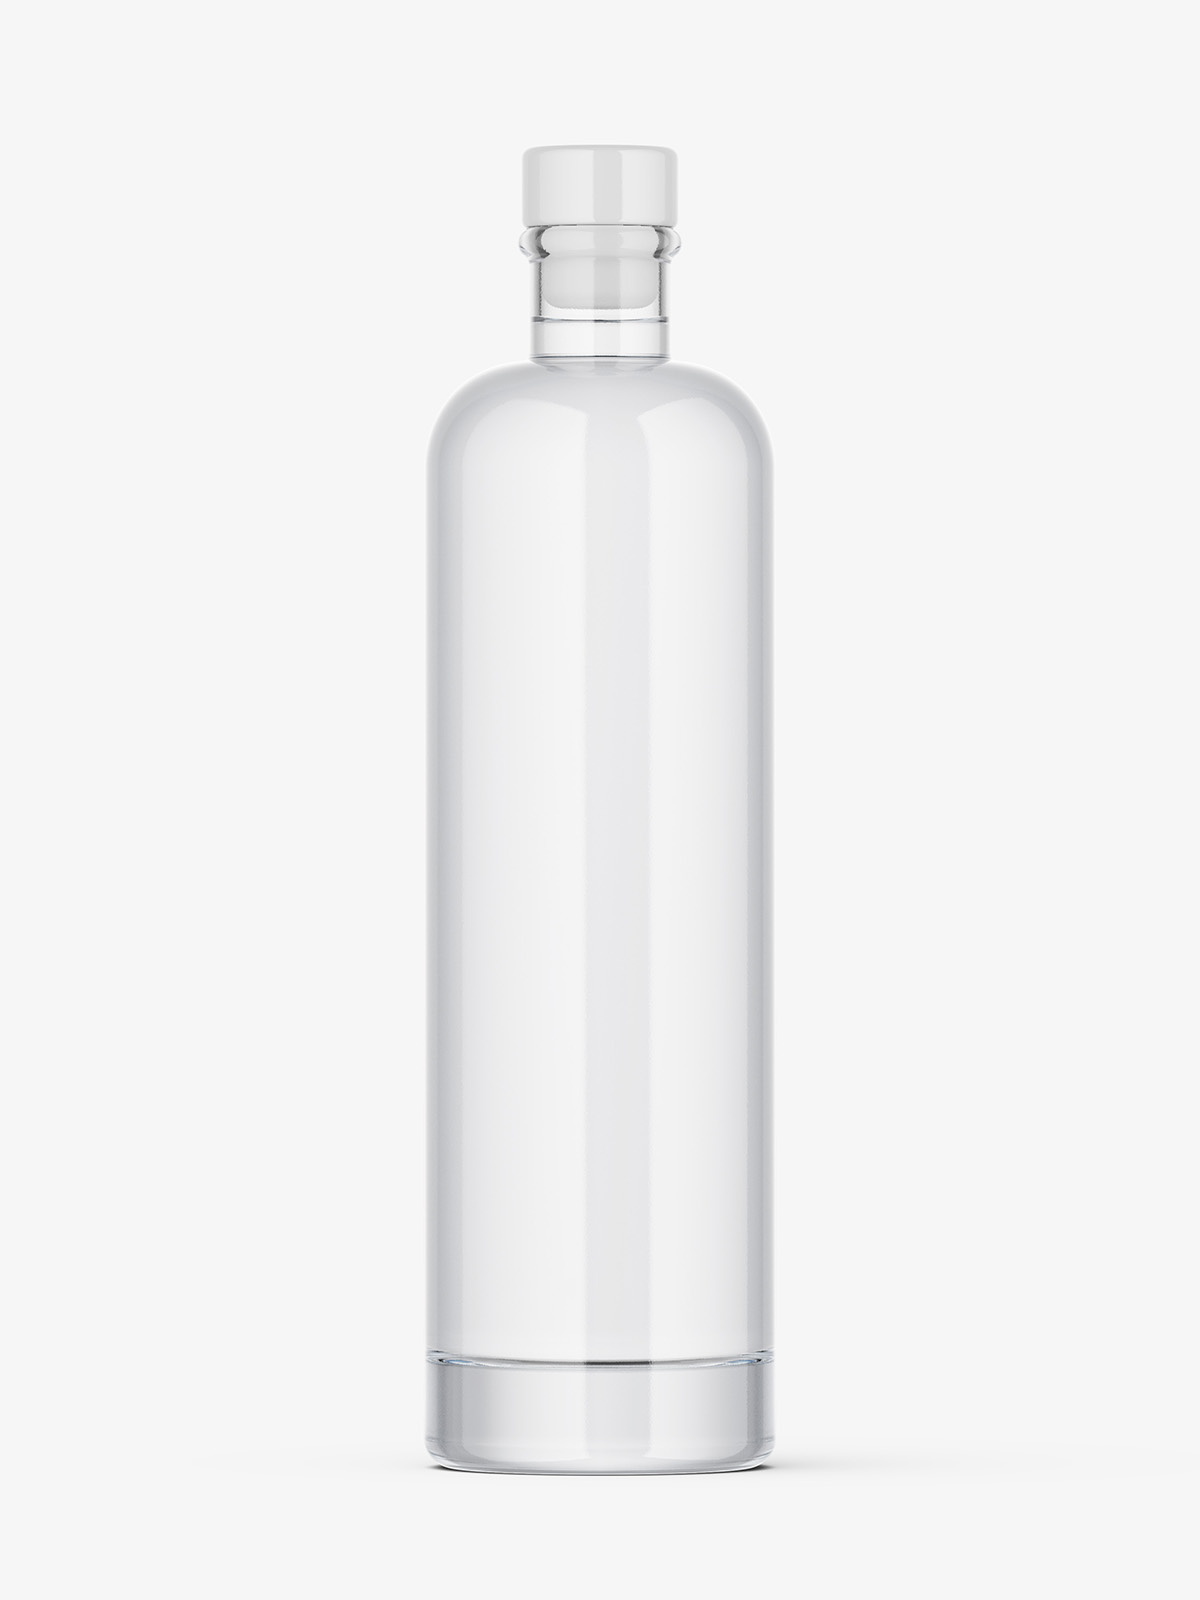 https://smartymockups.com/wp-content/uploads/2022/12/Clear_Vodka_Bottle_Mockup_1.jpg